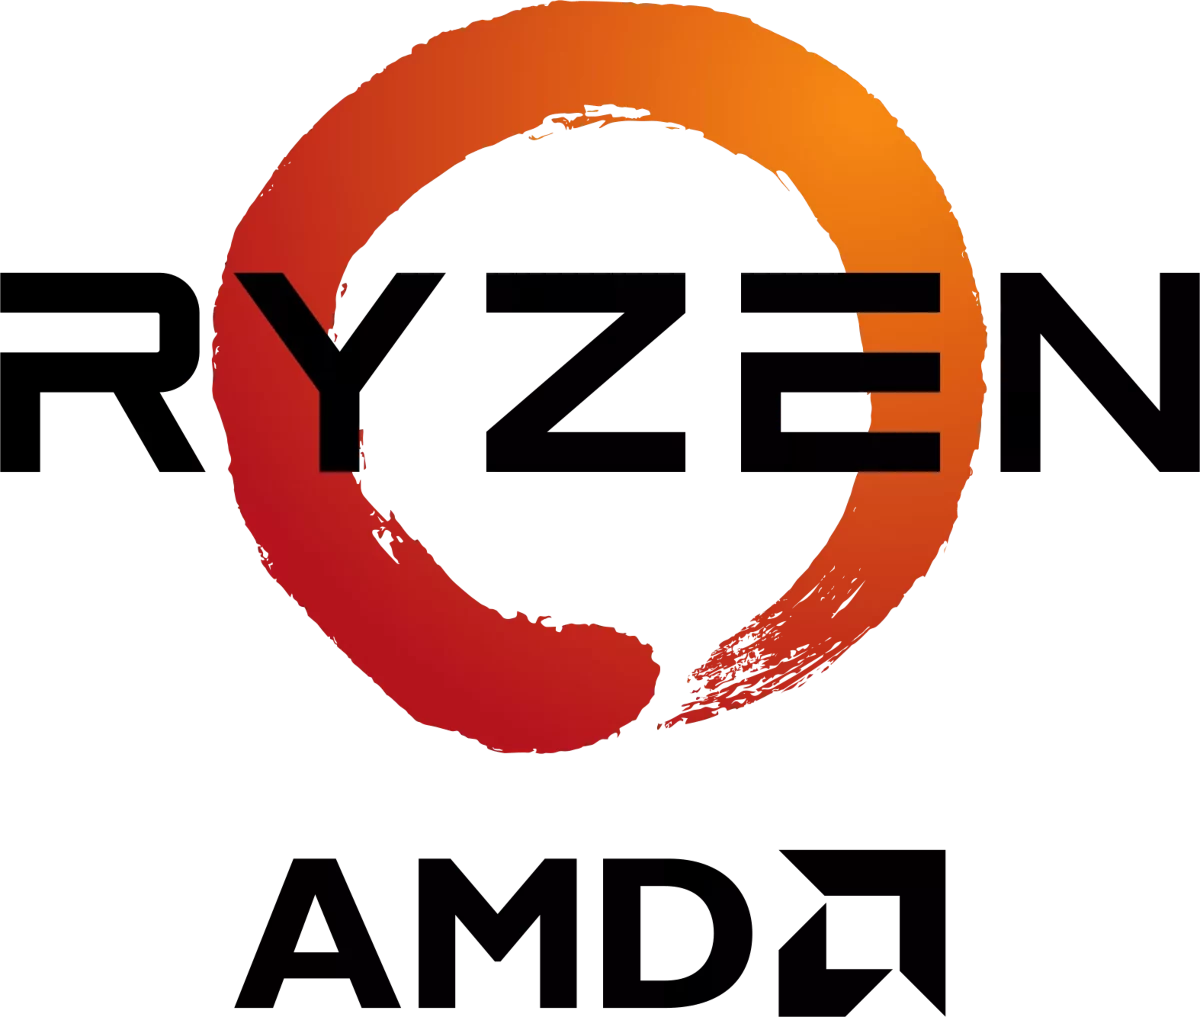 Логотип AMD Ryzen